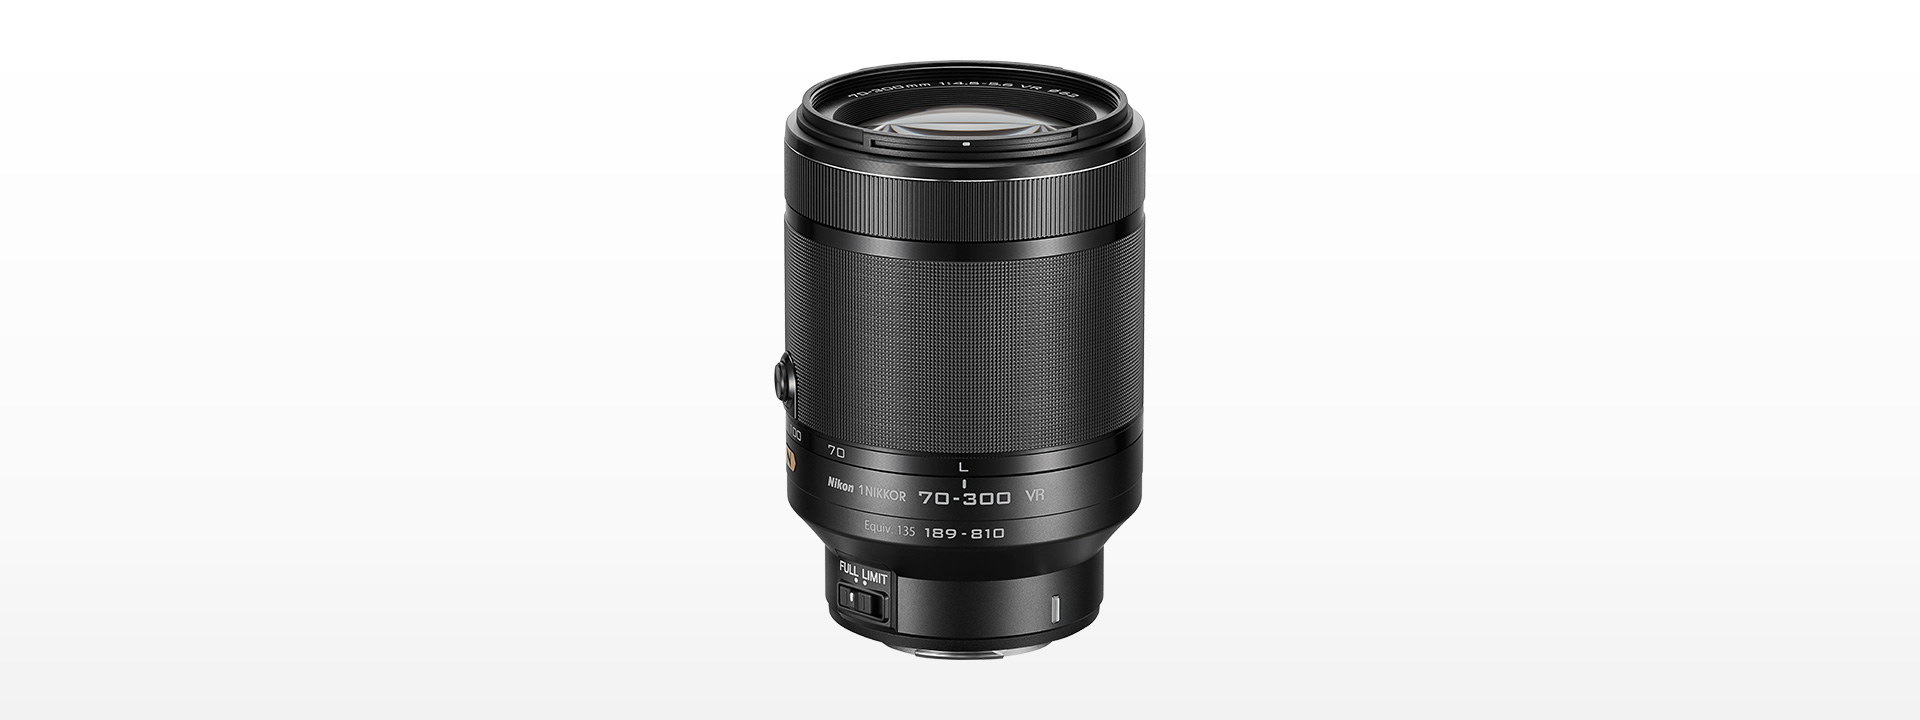 【オススメ】Nikon 望遠ズームレンズ1 NIKKOR VR 70-300mm f/4.5-5.6 1NVR70-300